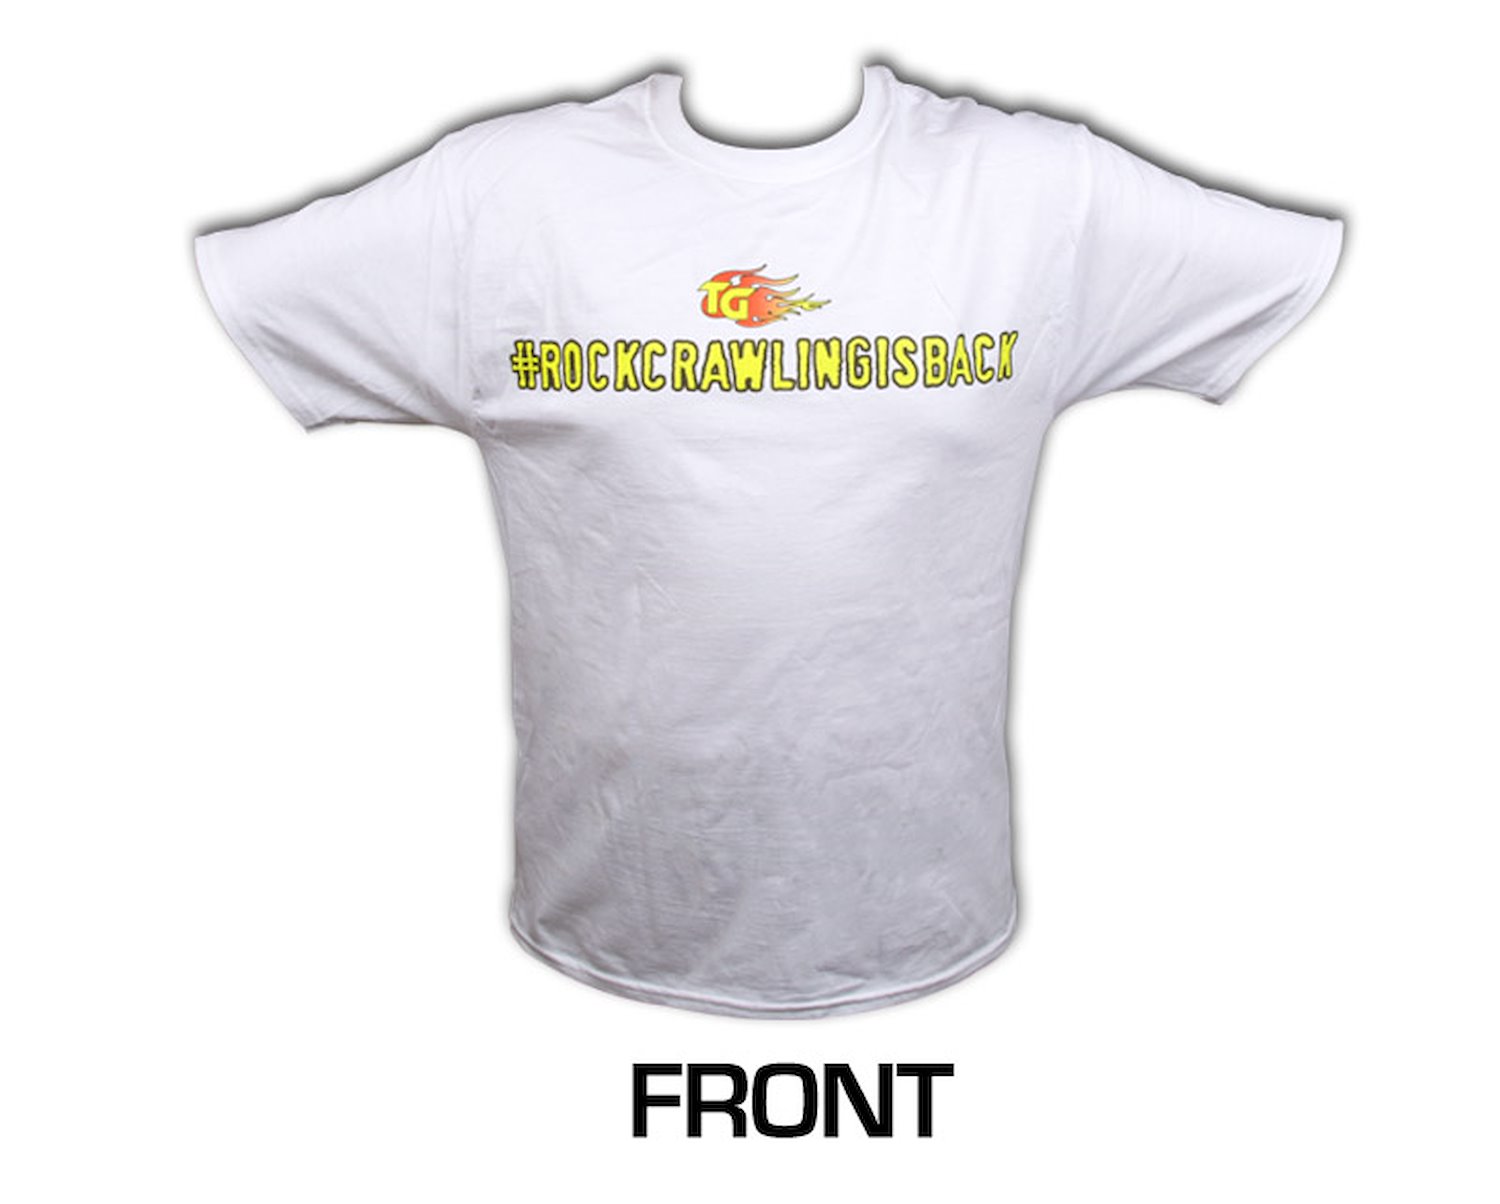 Short Sleeved White Shirt #rockcrawlingisback Large